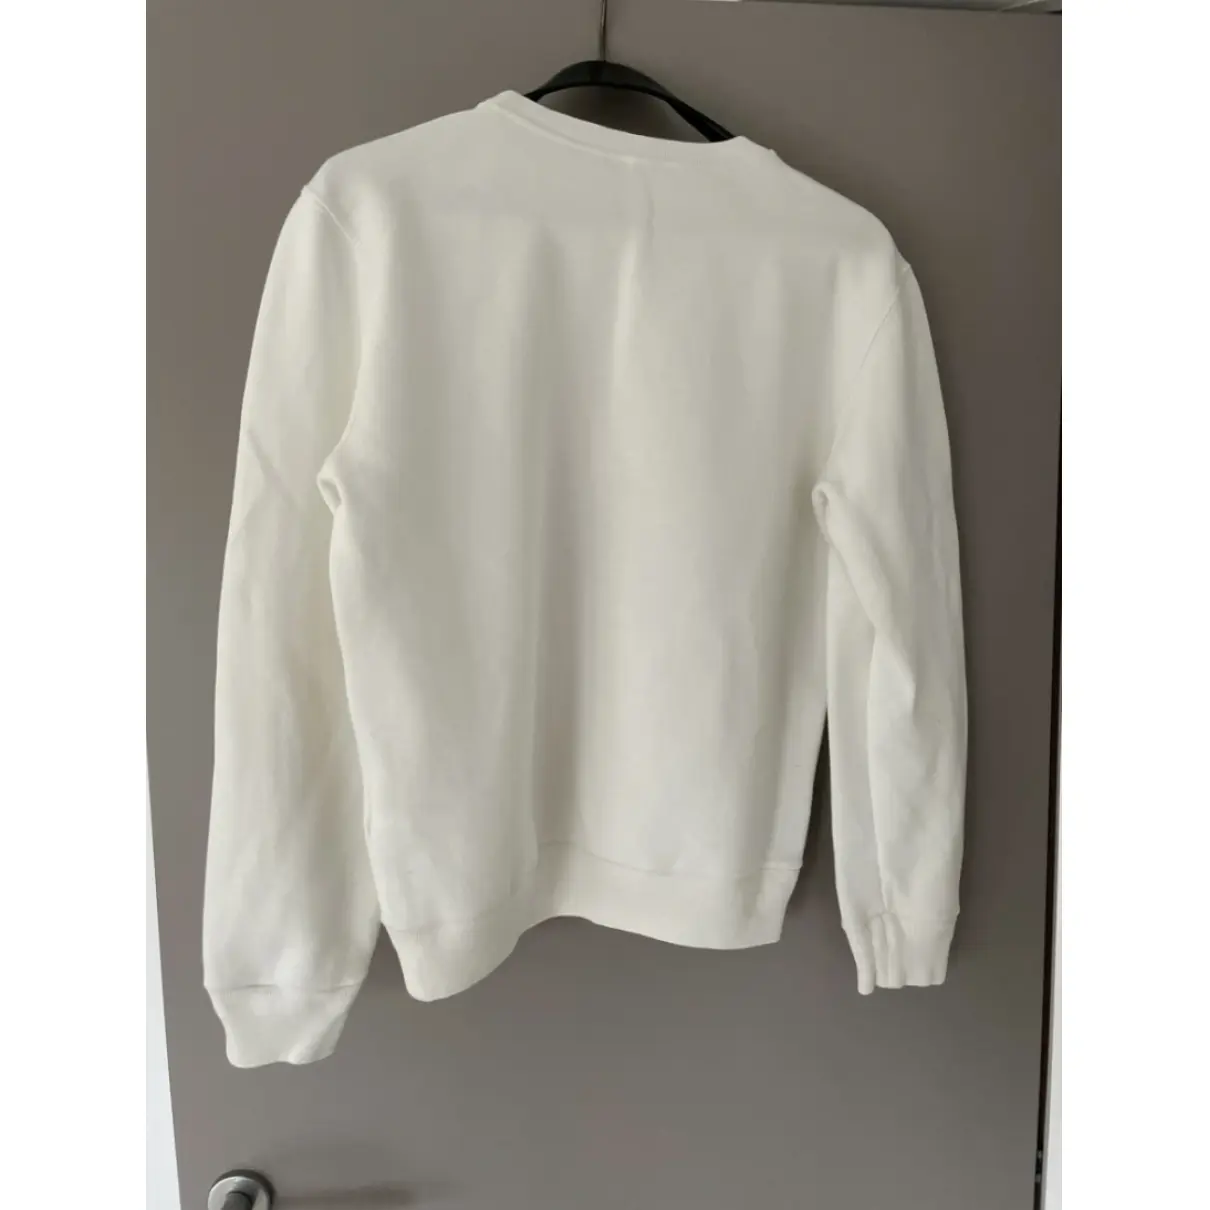 Buy Louis Vuitton Sweatshirt online